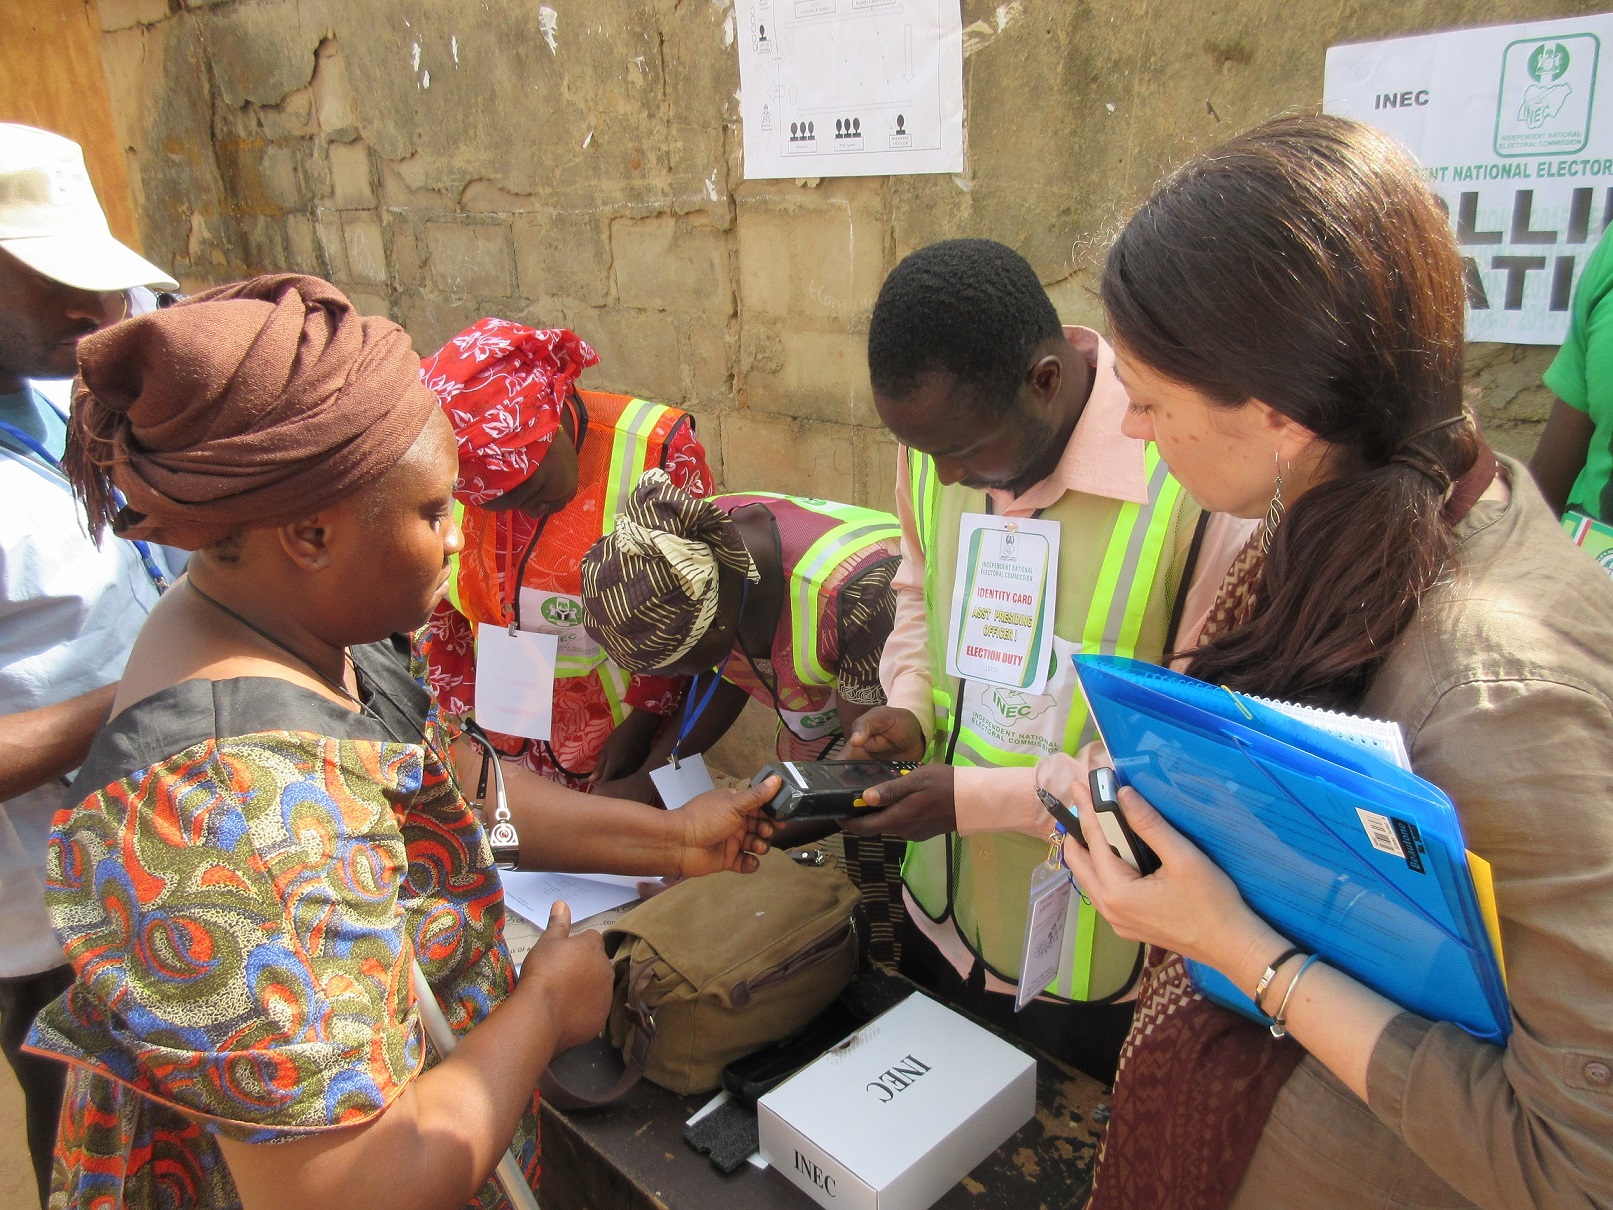 An IRI observer watches as a poll officer checks a voter’s fingerprint.